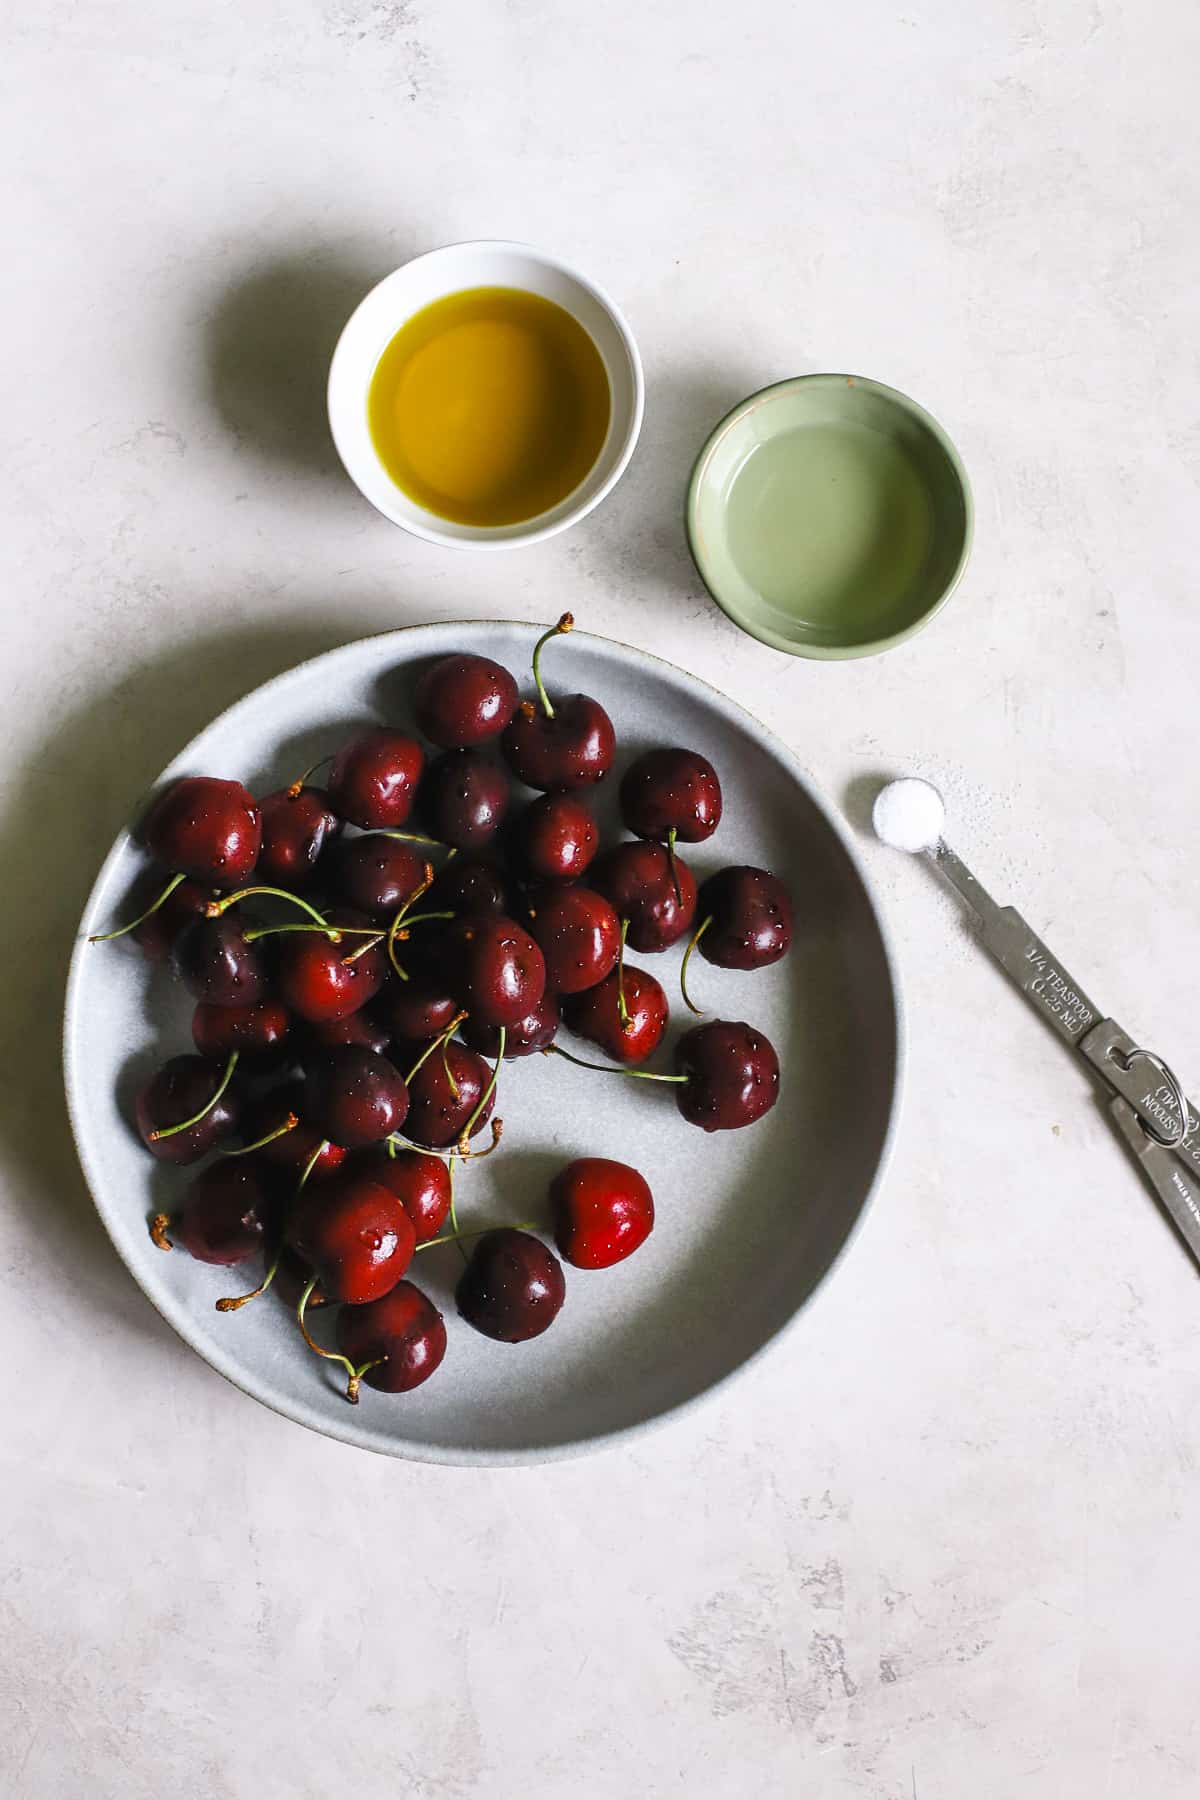 Vinaigrette ingredients: sweet cherries, olive oil, light vinegar, and salt on gray-white surface